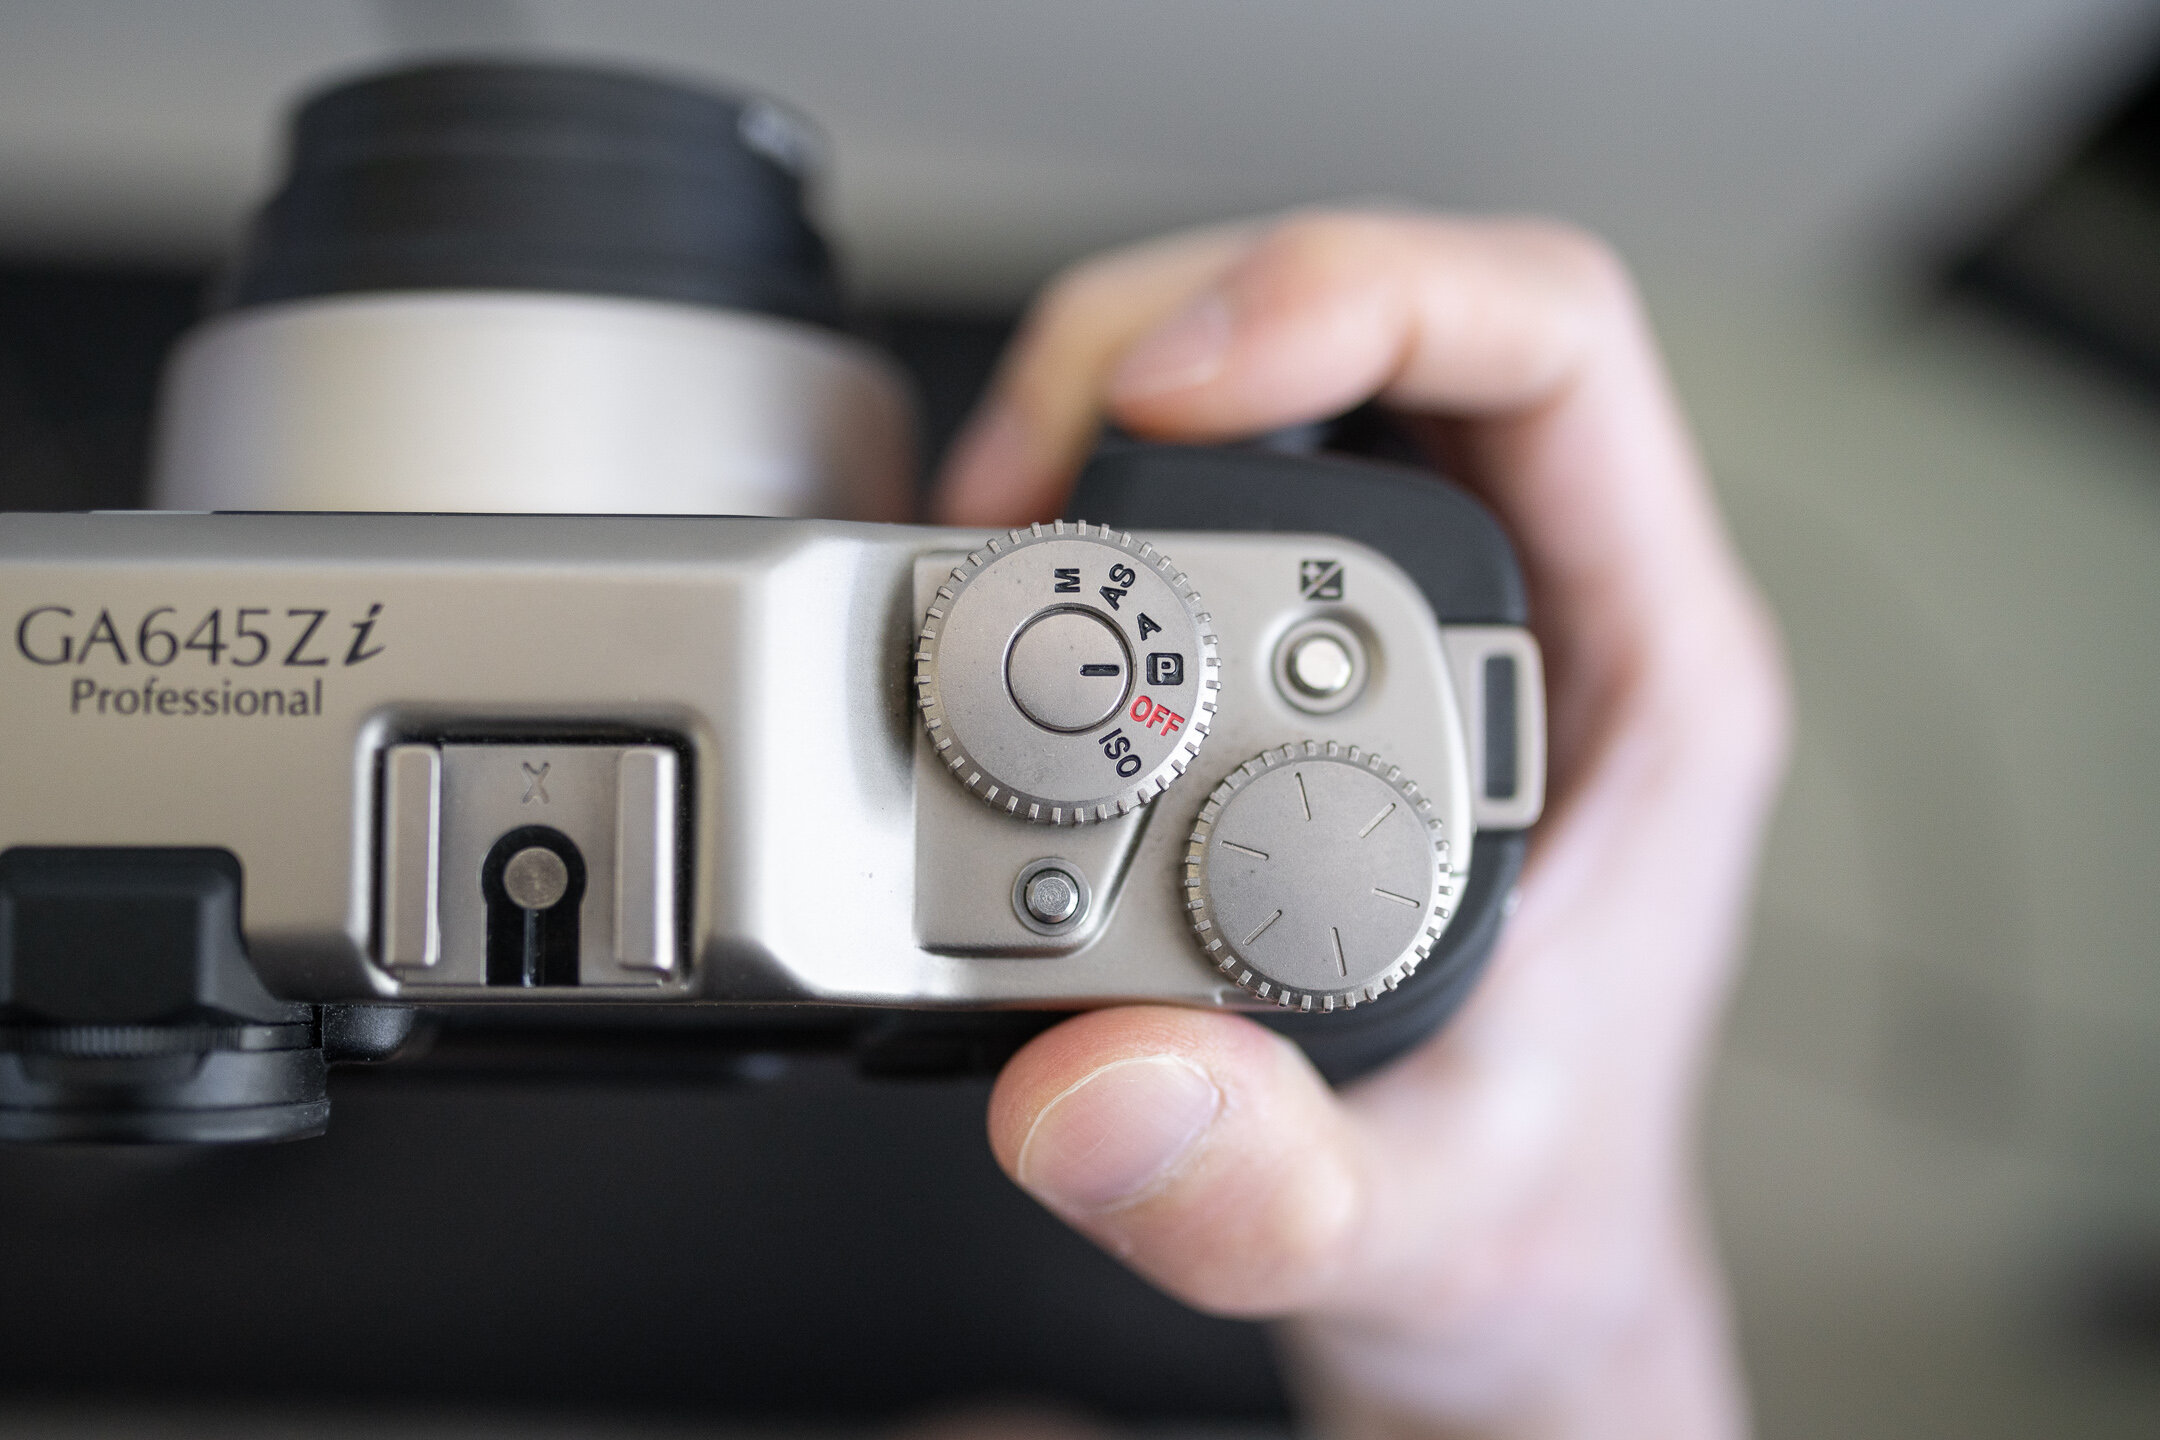 Fujifilm GA645Zi and Fujifilm GA645W: A Tale of Two Cameras 